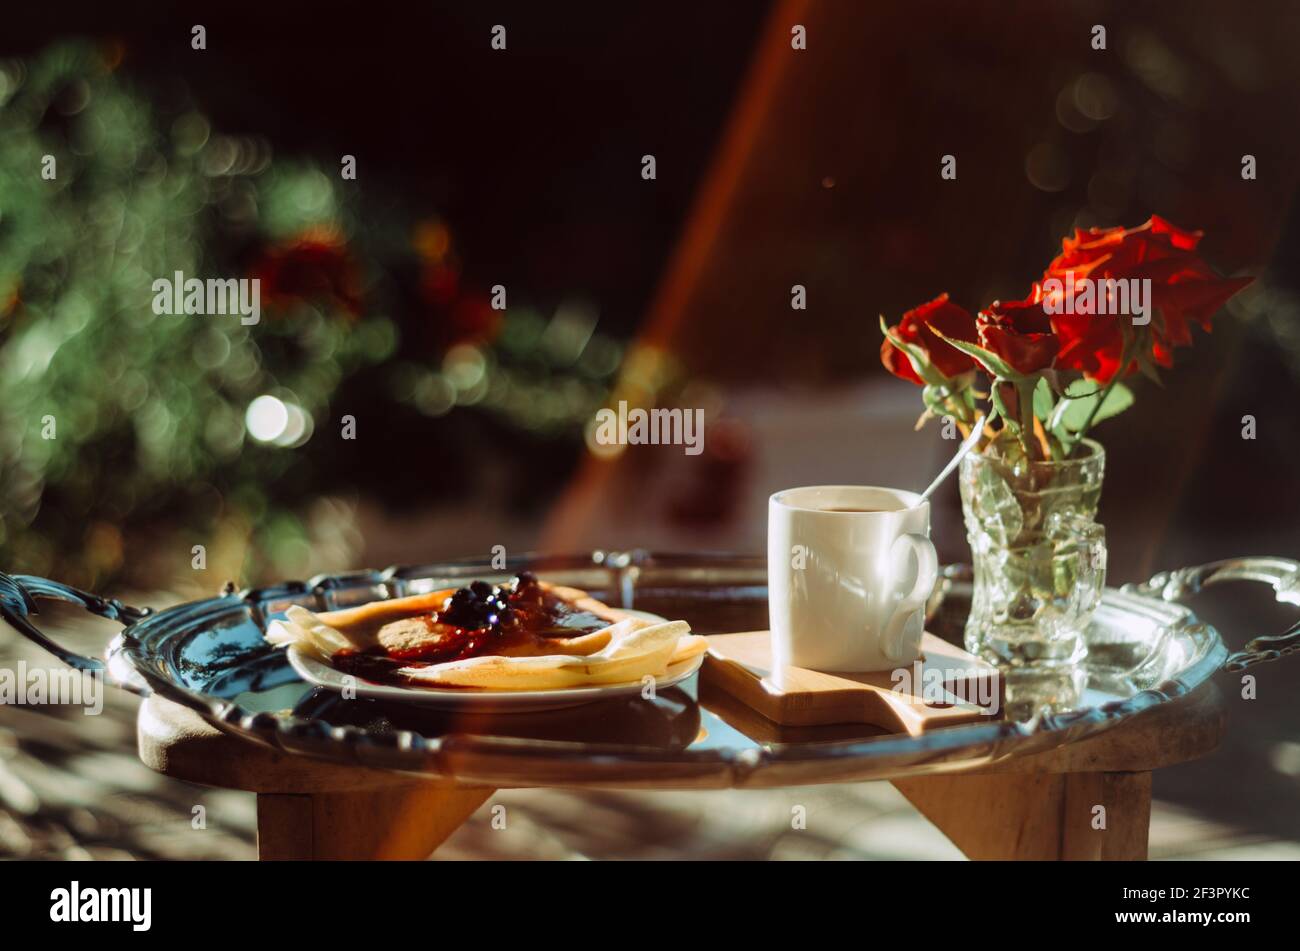 Brunch en plein air avec gros plan d'une tasse de café expresso, crêpes avec confiture et roses dans un verre, sur un plateau argenté vintage, avec lentille de lumière Banque D'Images